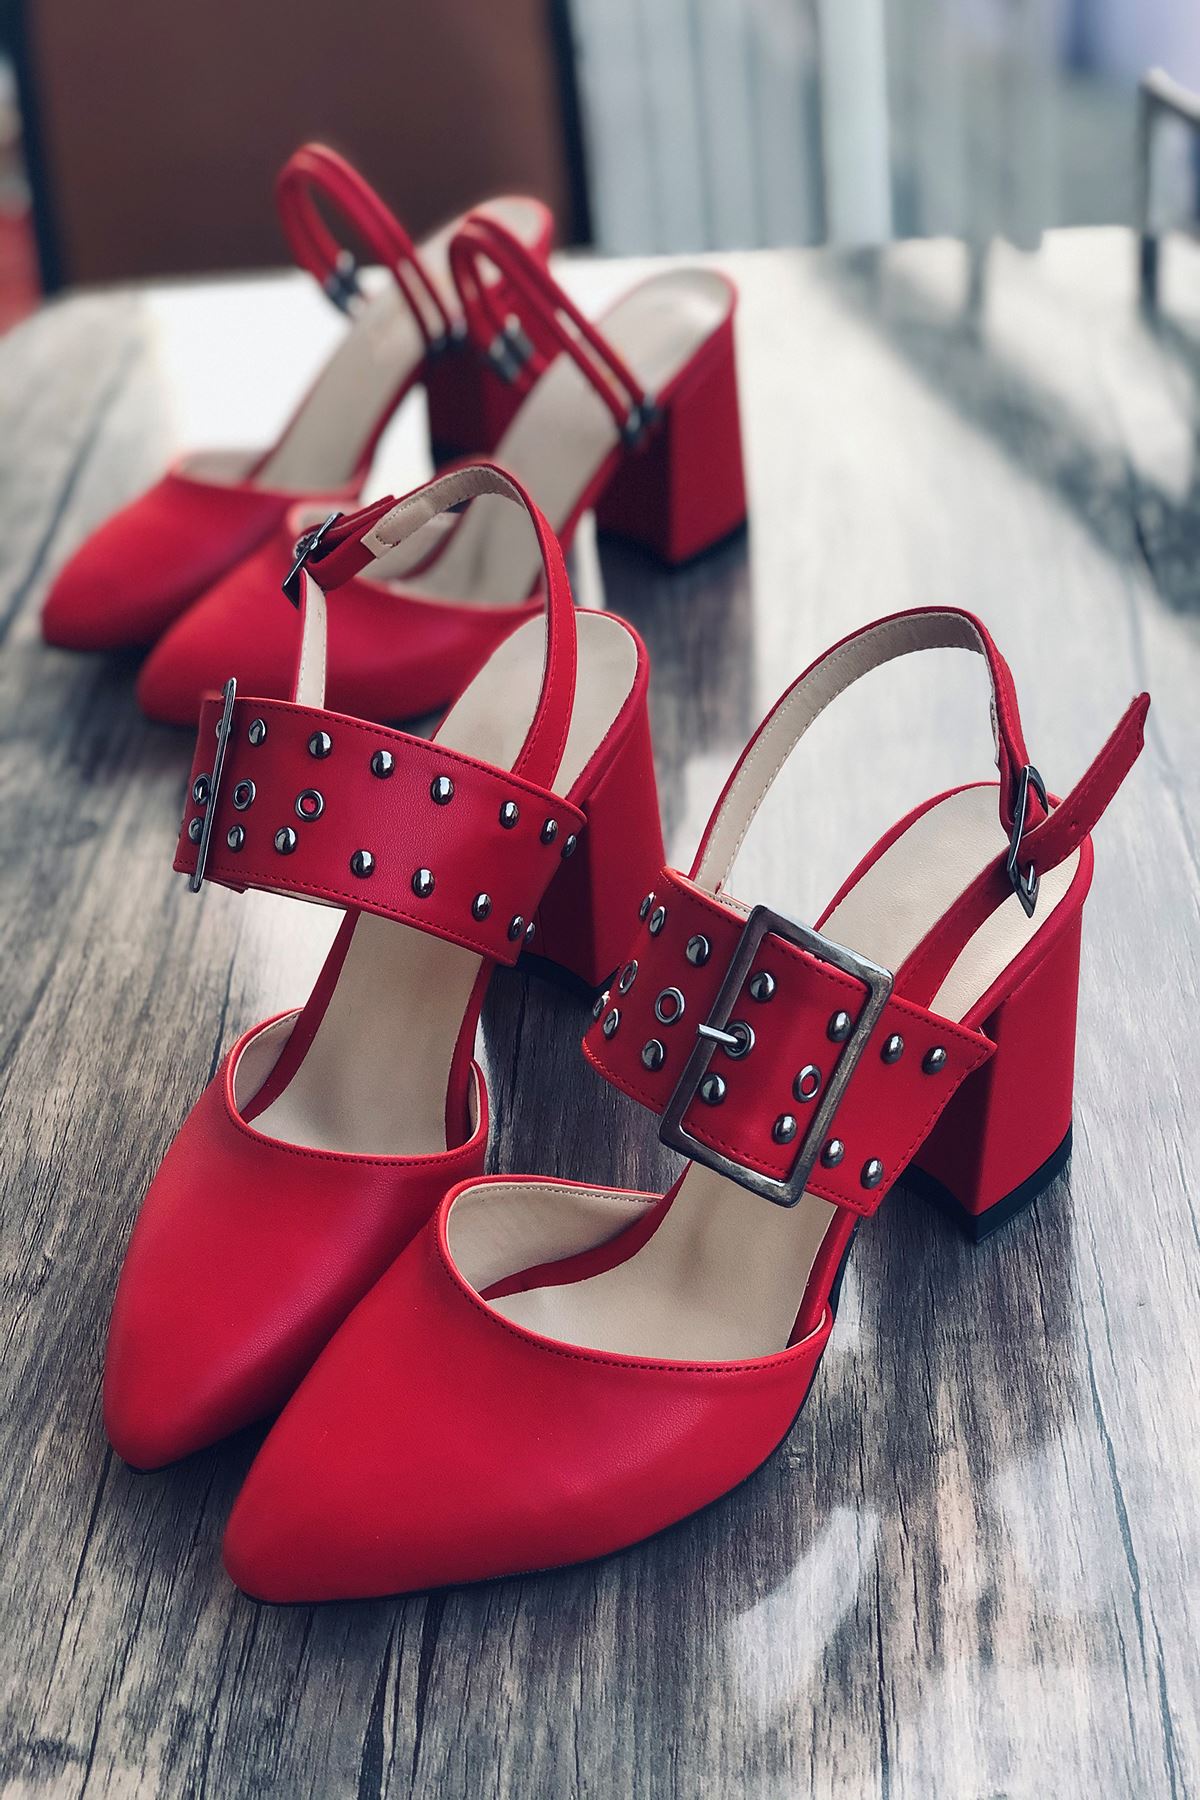 Mida Shoes Y120 Kırmızı Deri Topuklu Ayakkabı